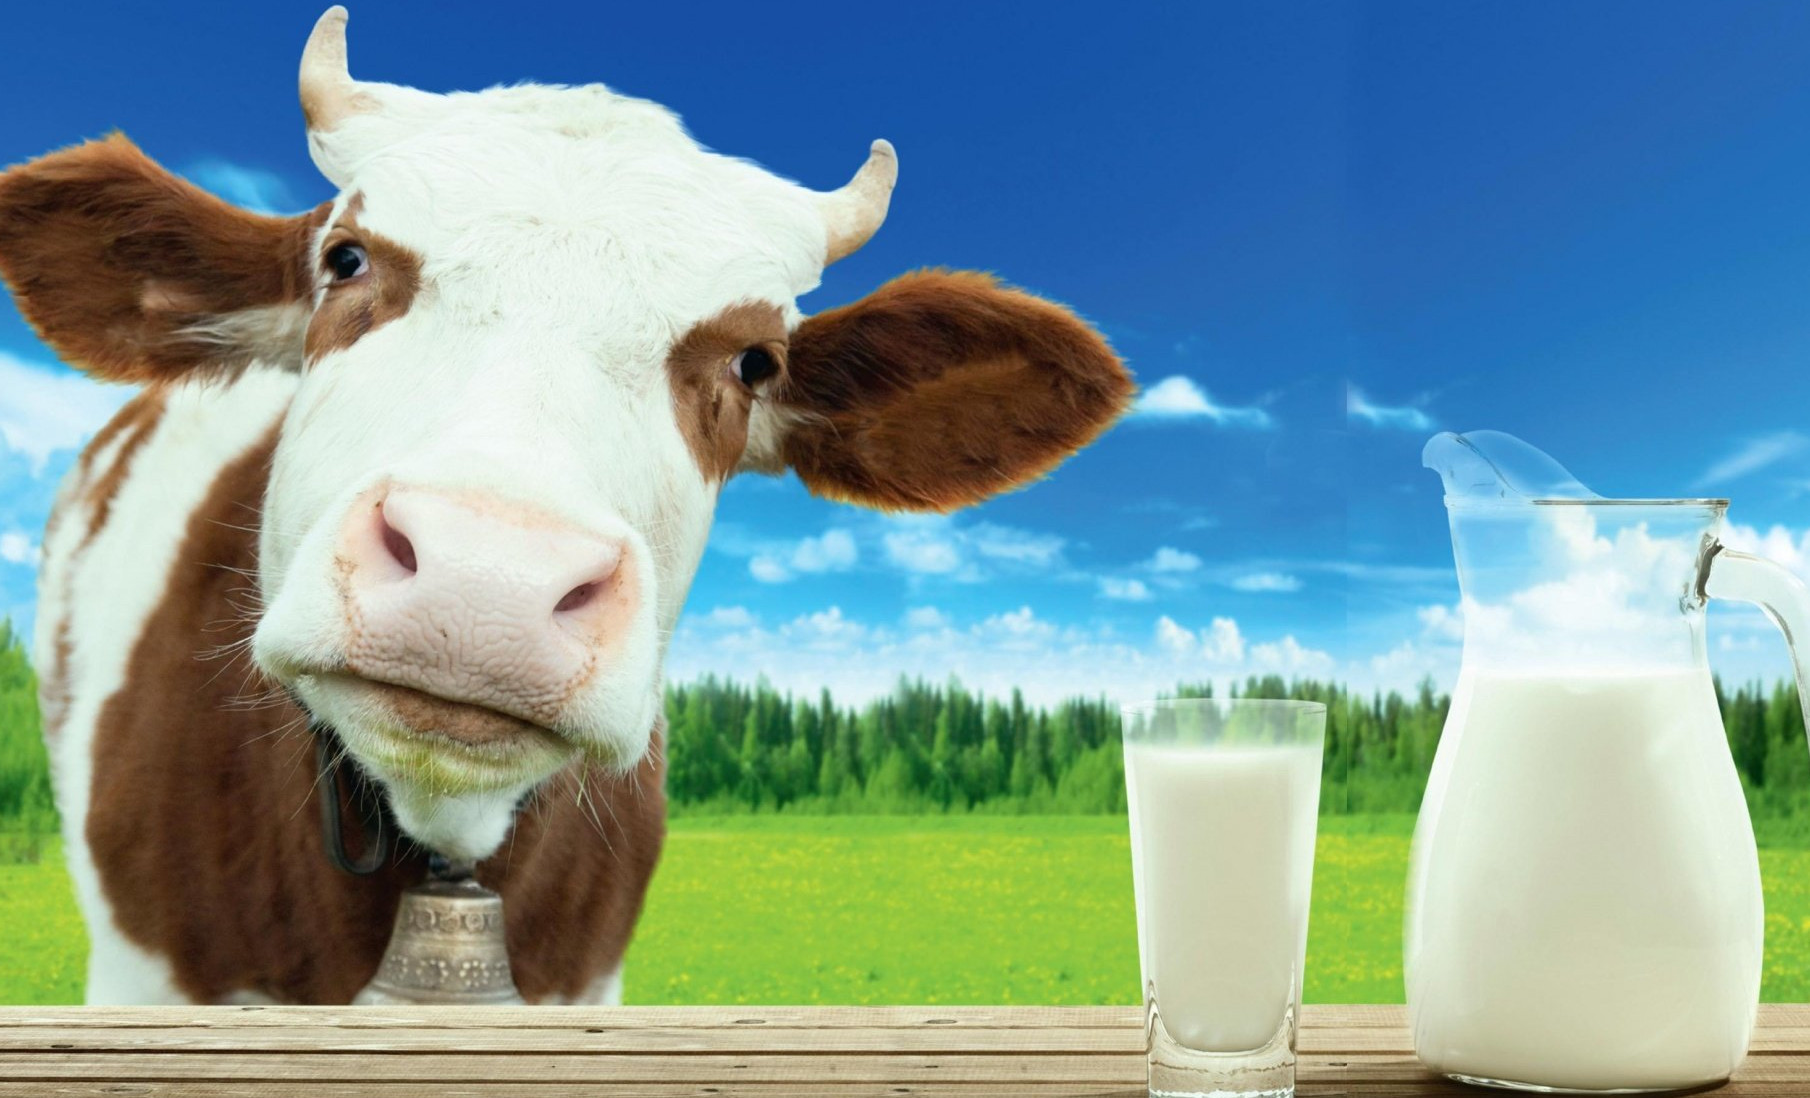 Плюсы фермерского молока